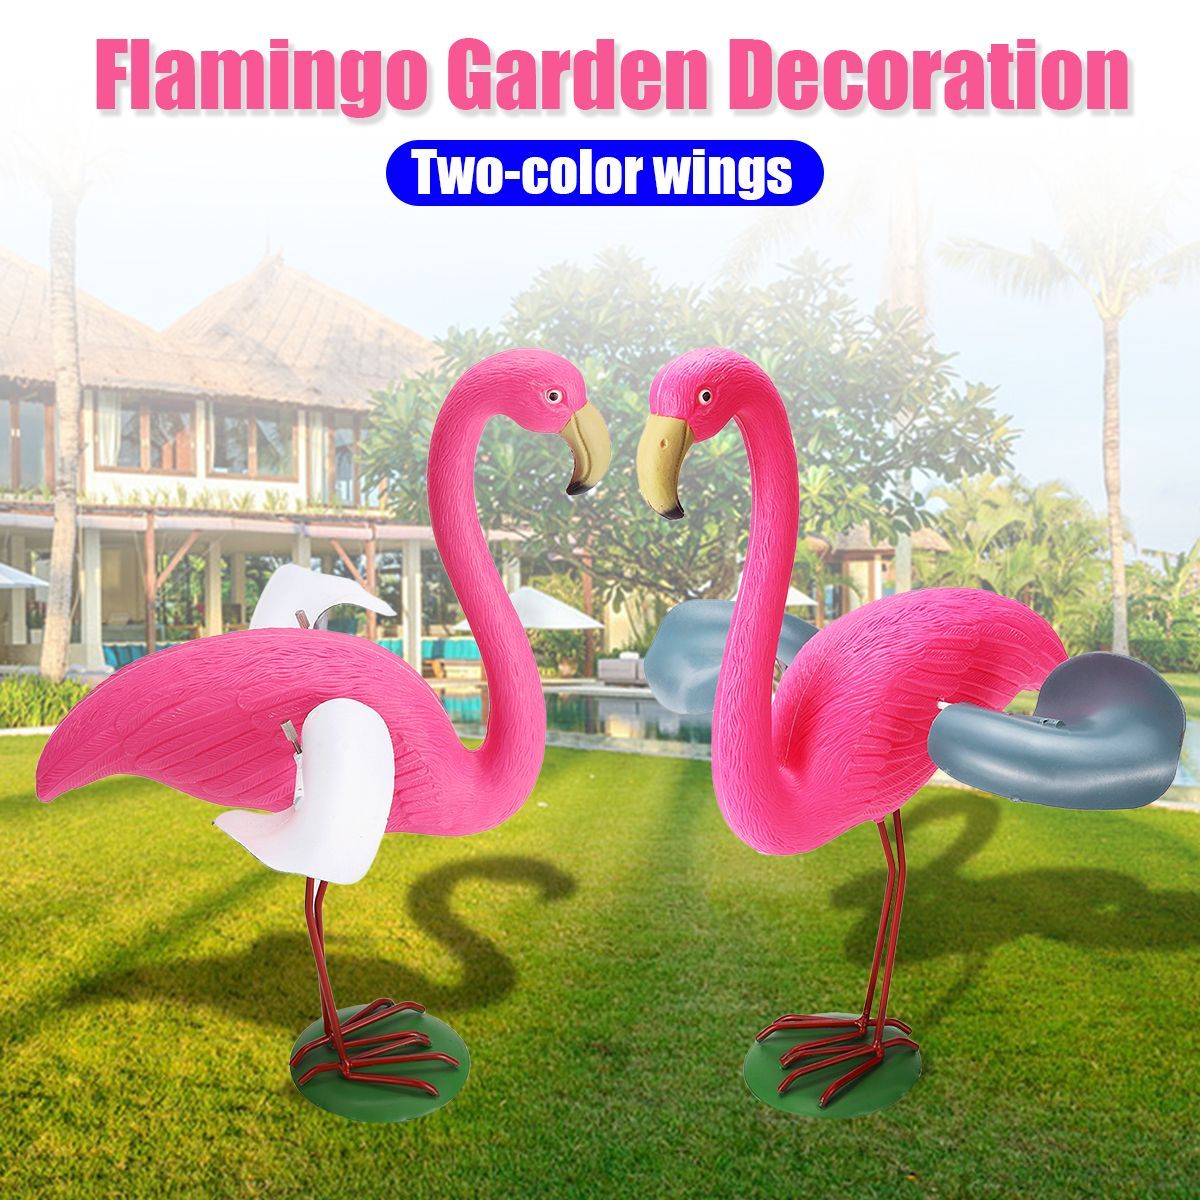 Flamingo-Garden-Decorations-DIY-Animal-Model-Detachable-Two-color-Wings-1445349